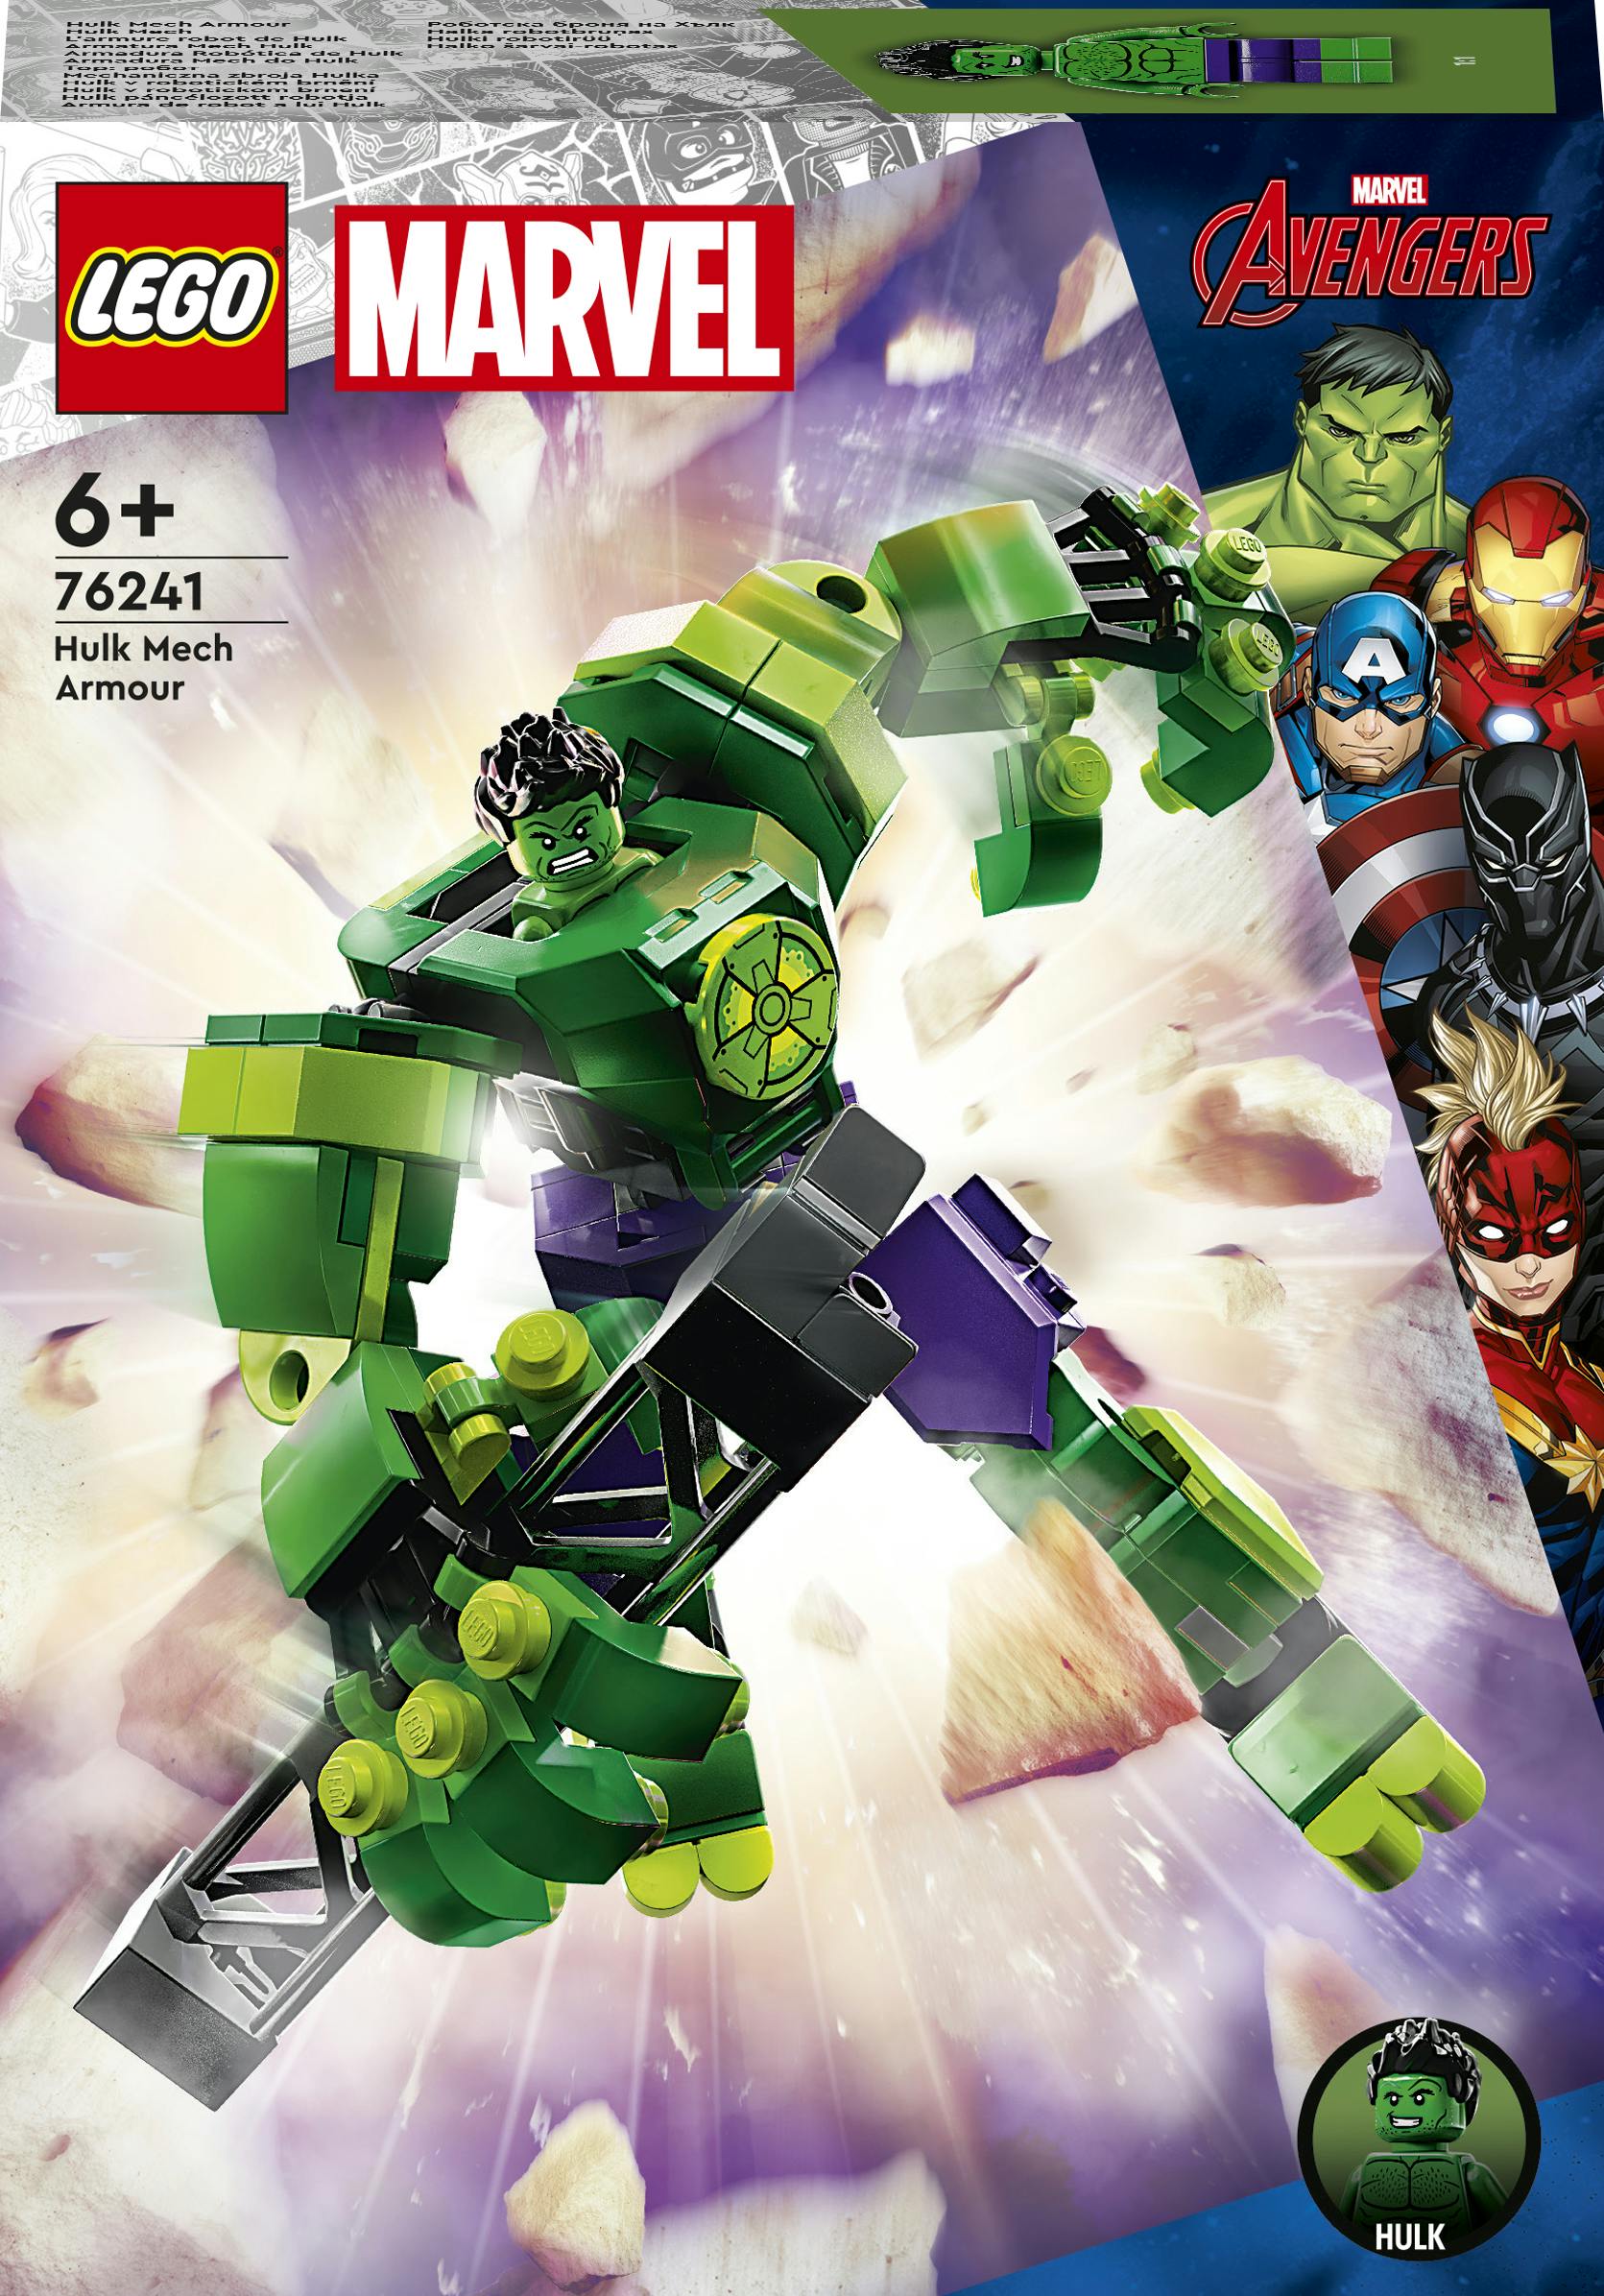 Marvel Avengers Marvel Hulk mechapantser Constructie Speelgoed (76241)